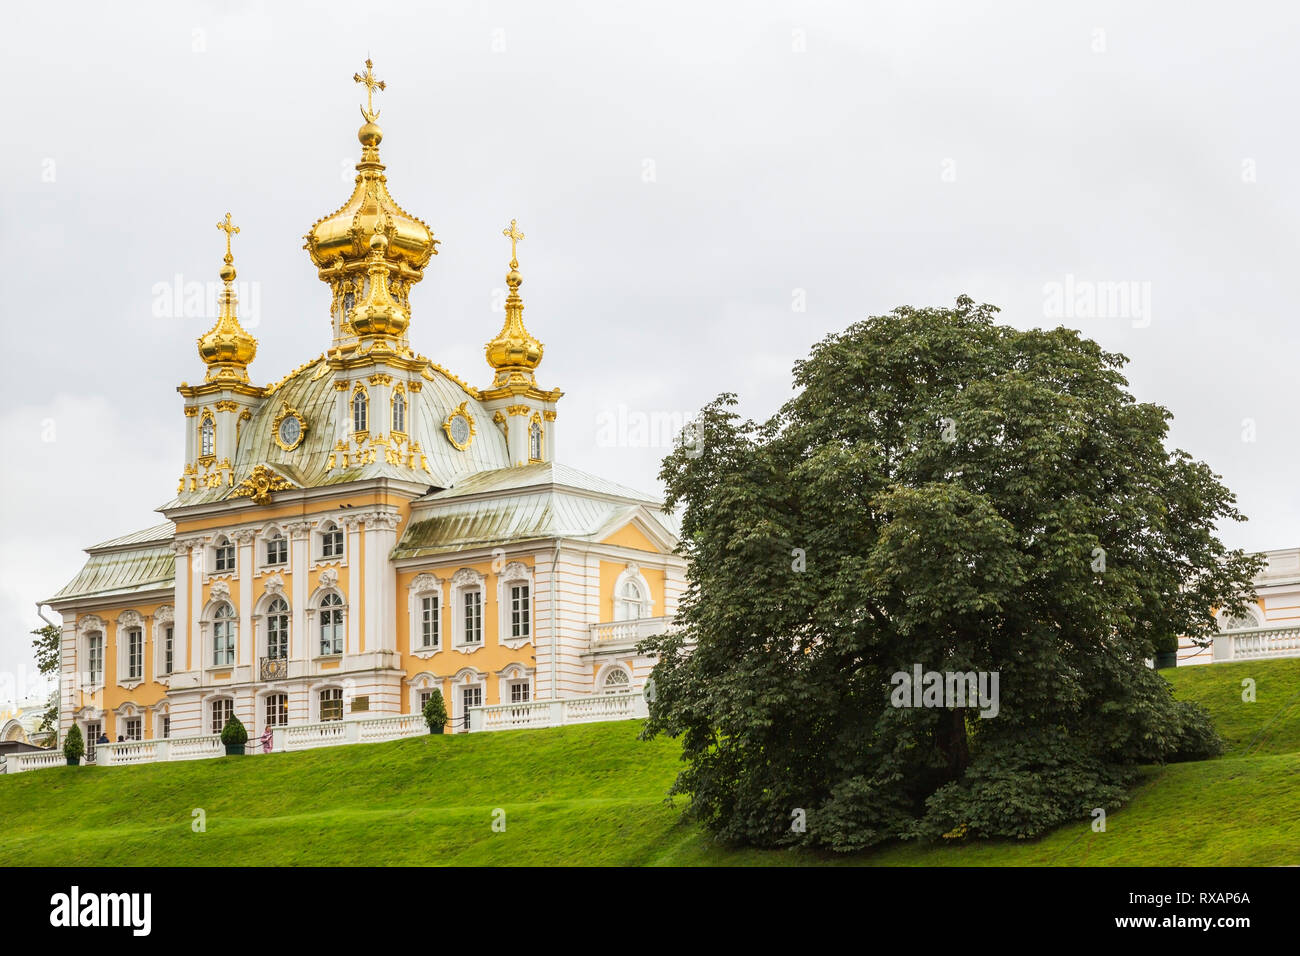 Capilla con cúpulas doradas y cruces, jardines y jardines del palacio Peterhof a finales del verano, Petergof, San Petersburgo, Rusia, Europa, Patrimonio de la Humanidad de la UNESCO Foto de stock